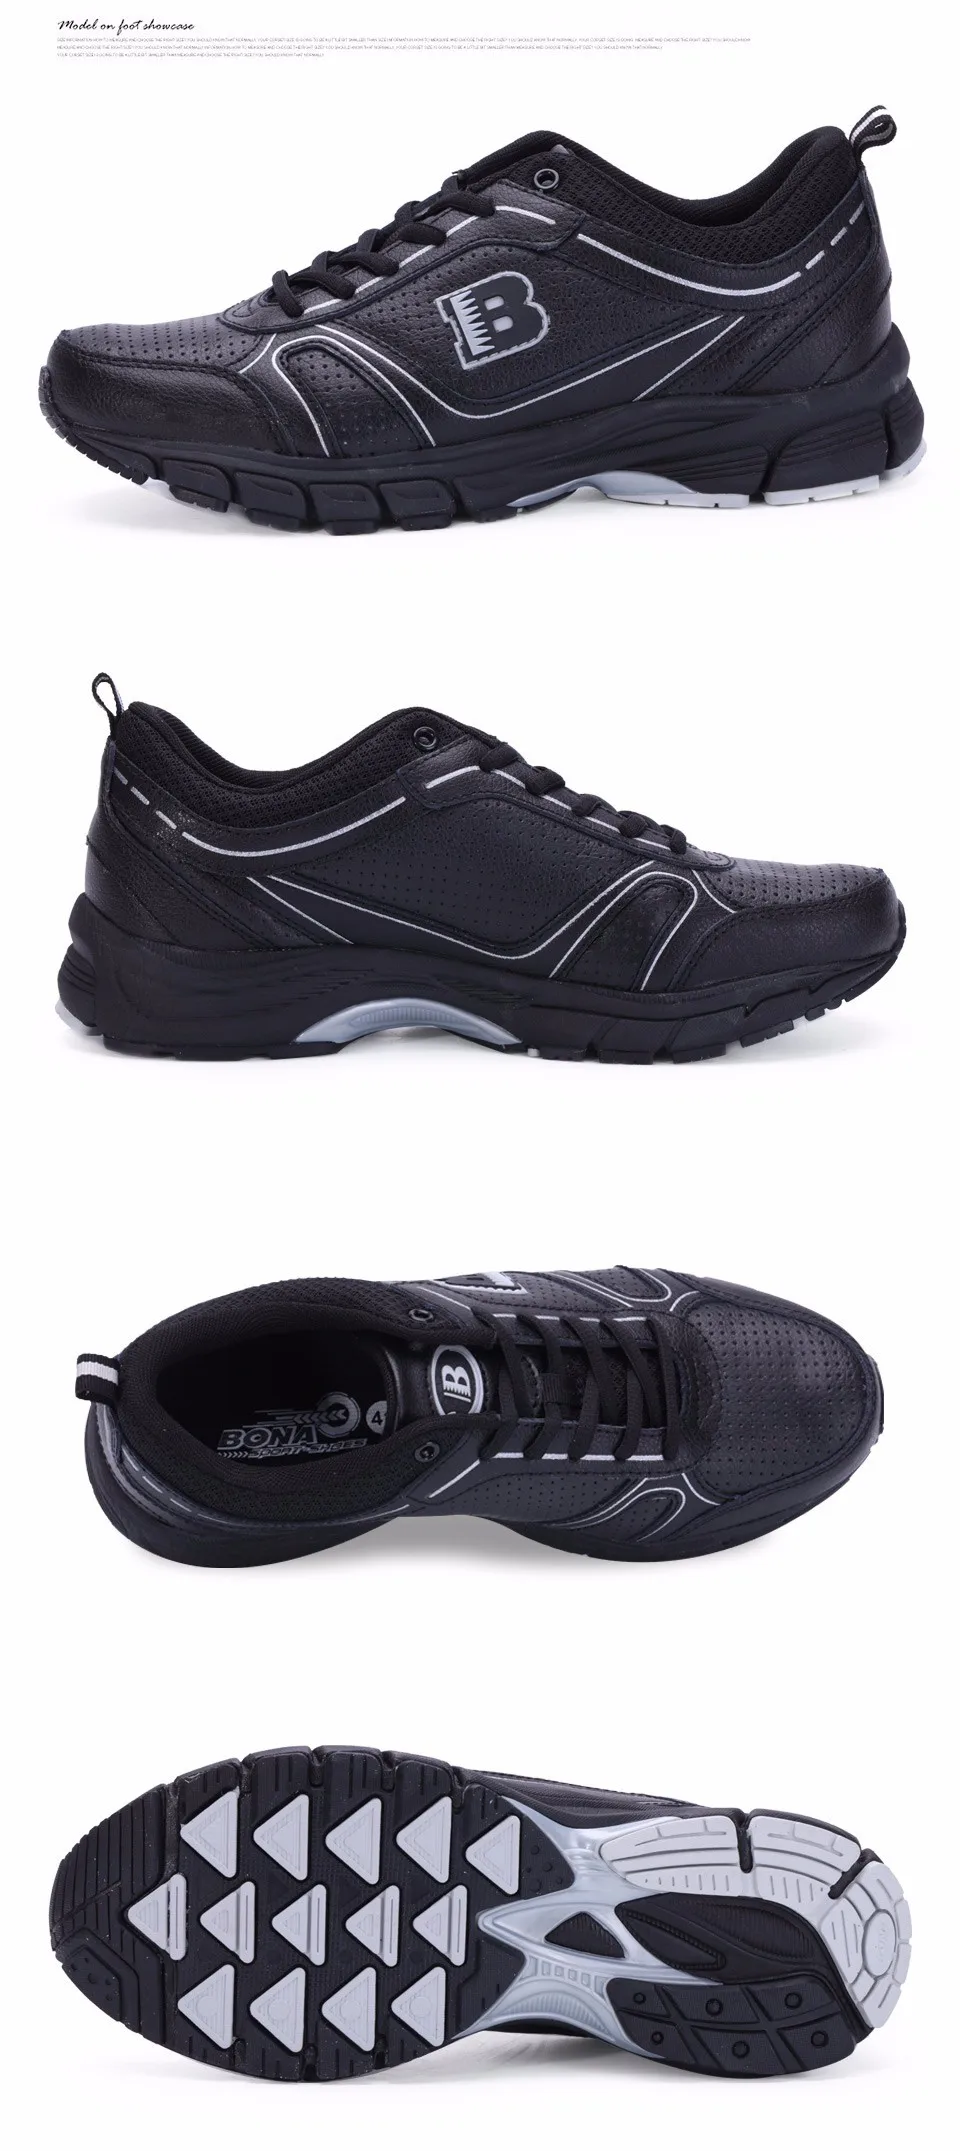 BONA/Брендовые мужские кроссовки с низким верхом; супер дышащие спортивные кроссовки; цвет черный, белый, темно-синий; удобные кроссовки;